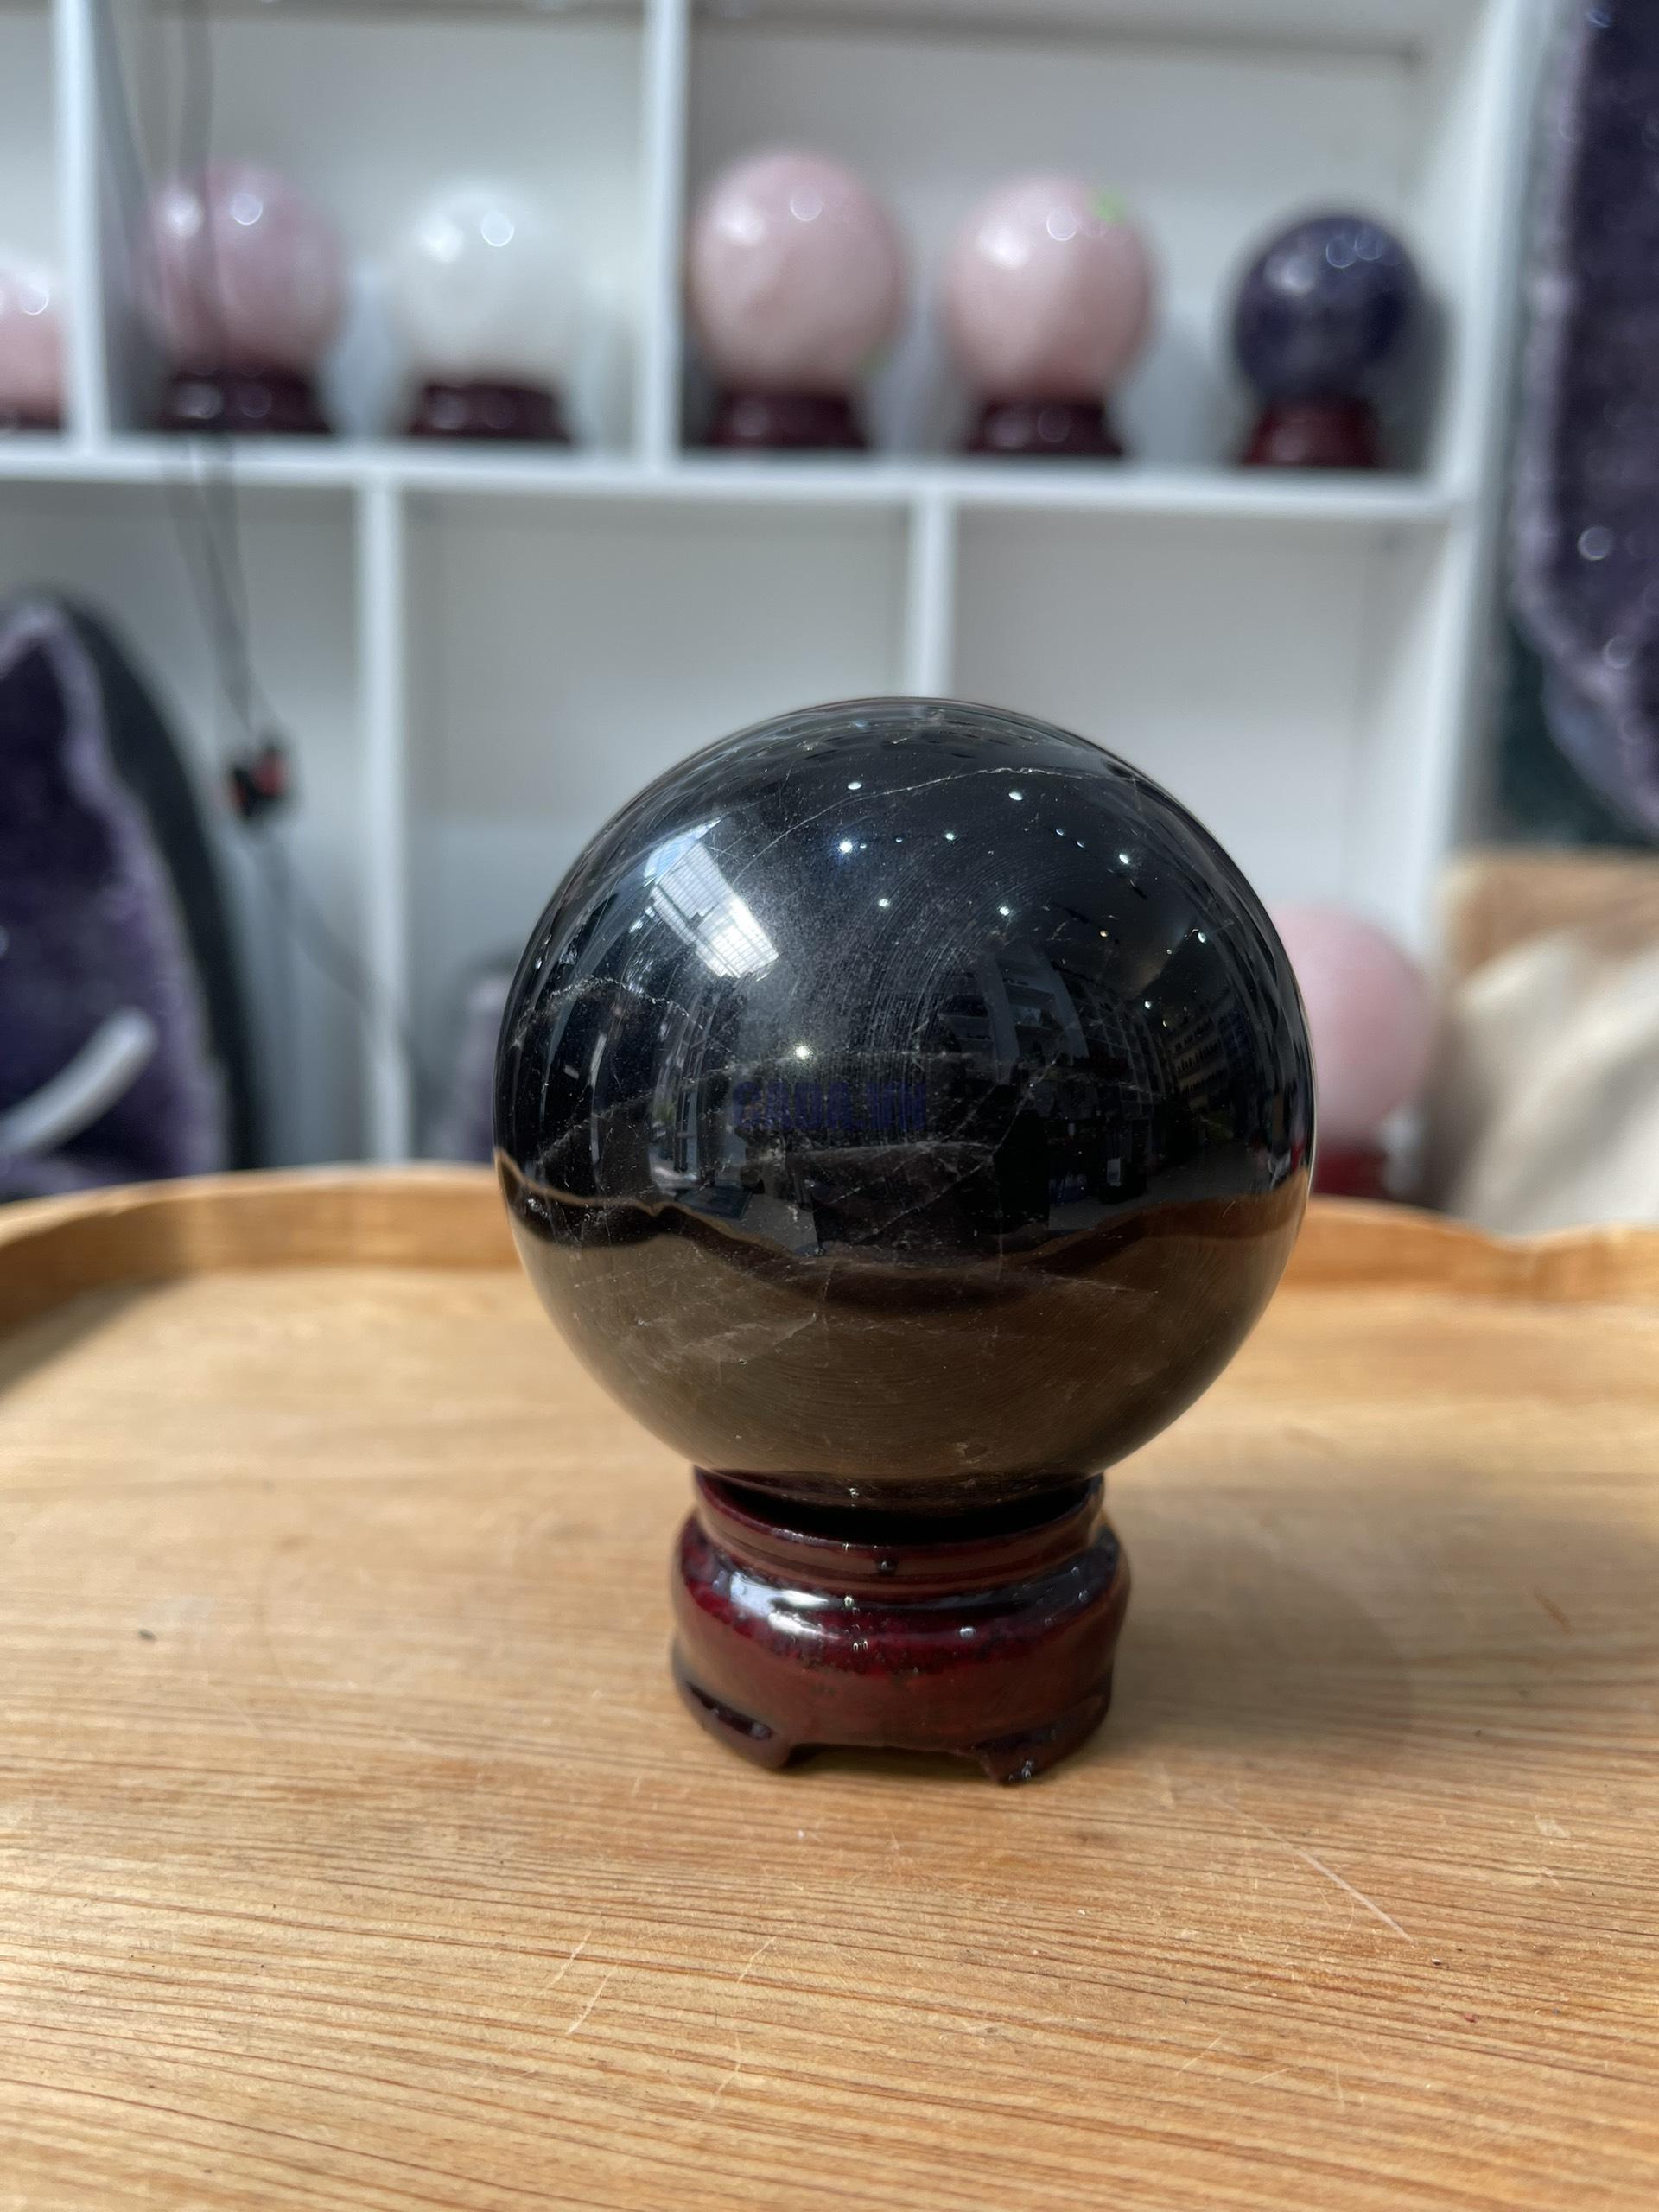 Bi cầu Thạch Anh Đen - Black Quartz Sphere (BĐE24), KL: 0.554 KG, ĐK: 7.3 CM